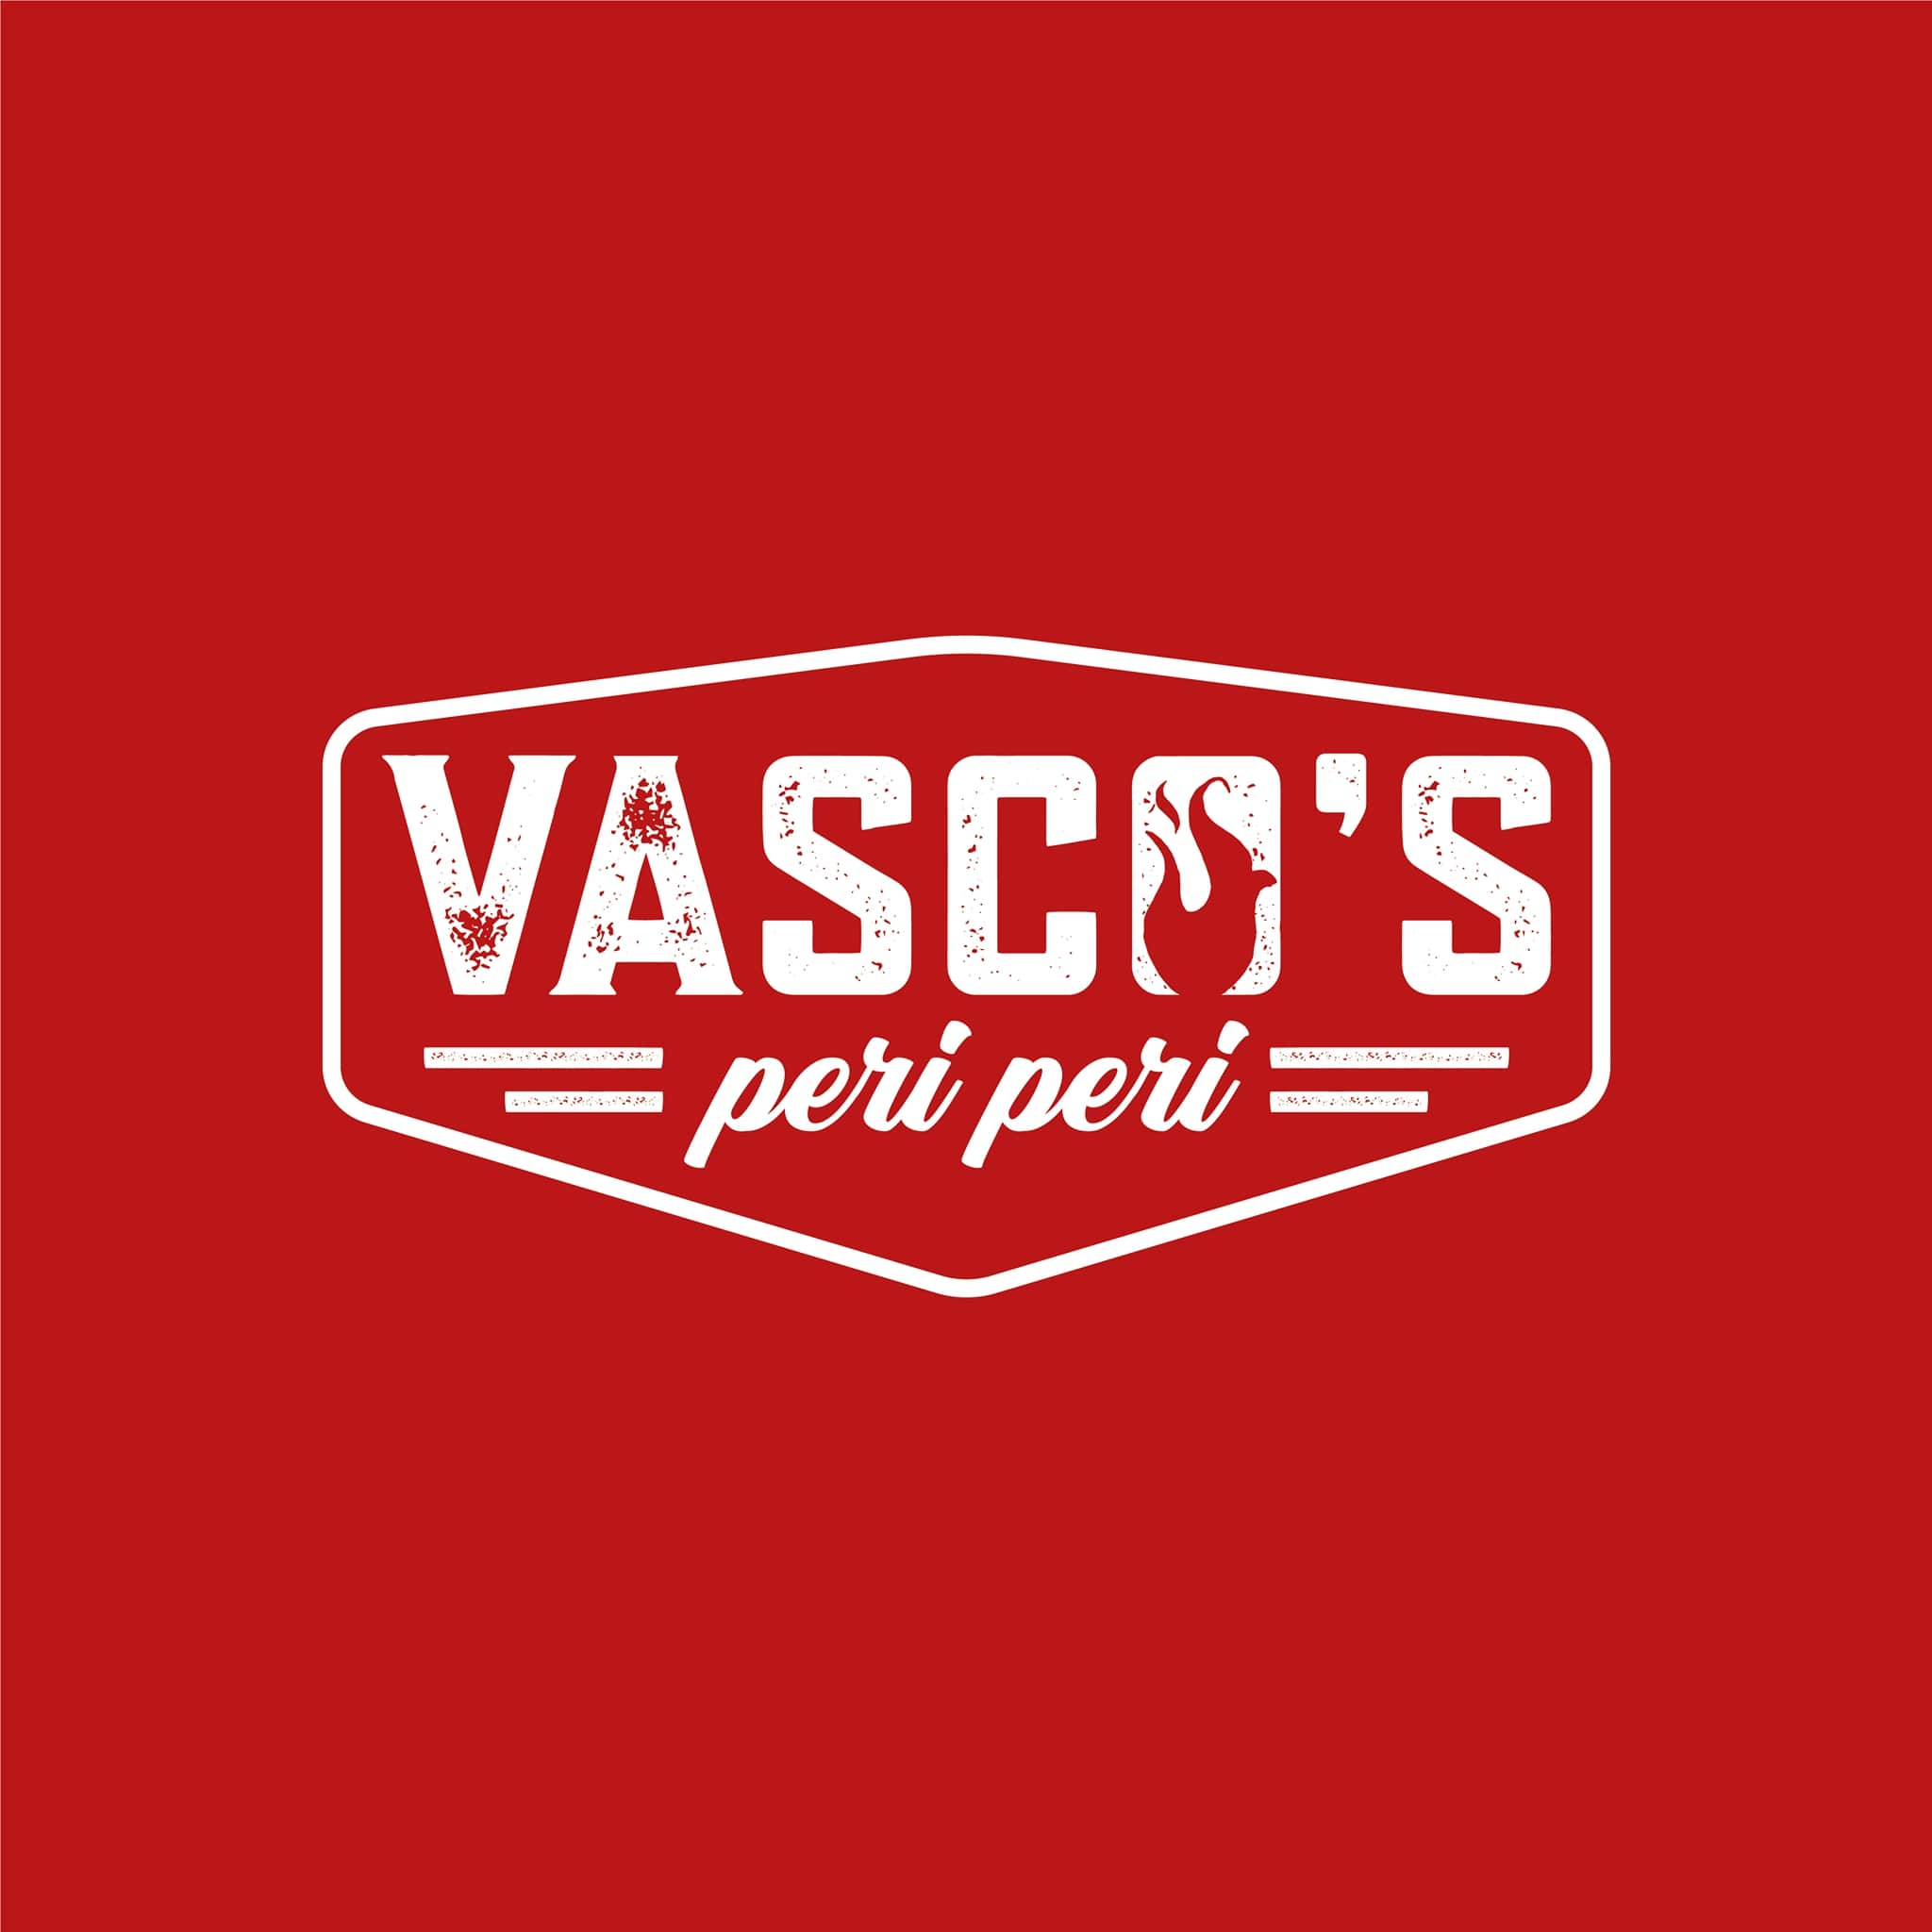 Vasco's Peri Peri